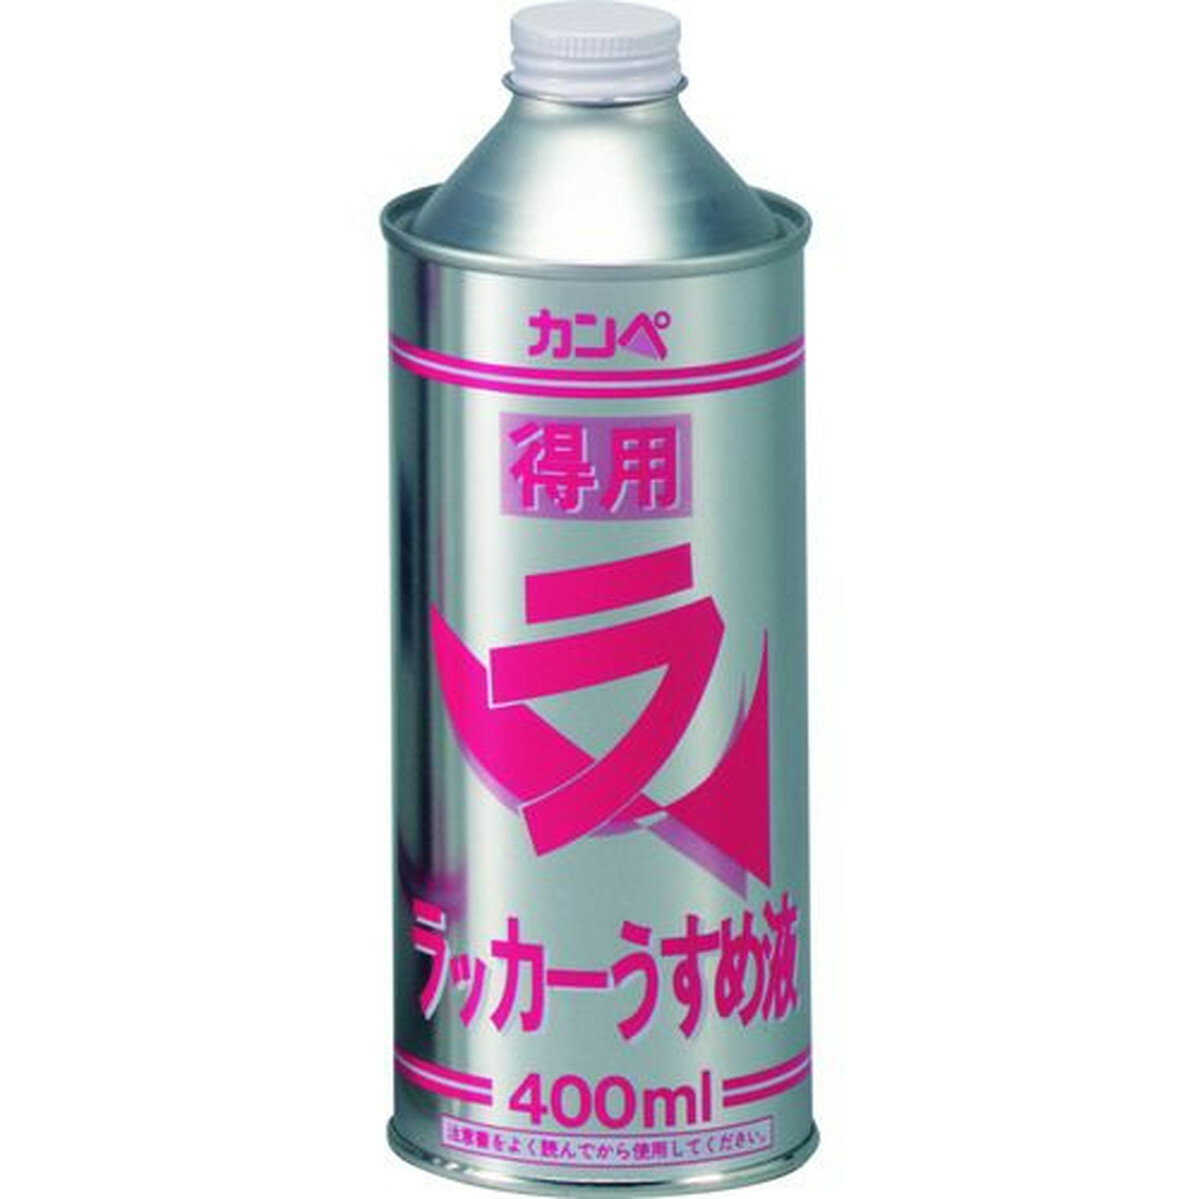 KANSAI 得用ラッカーうすめ液 400ml 1缶 (NO288-04)